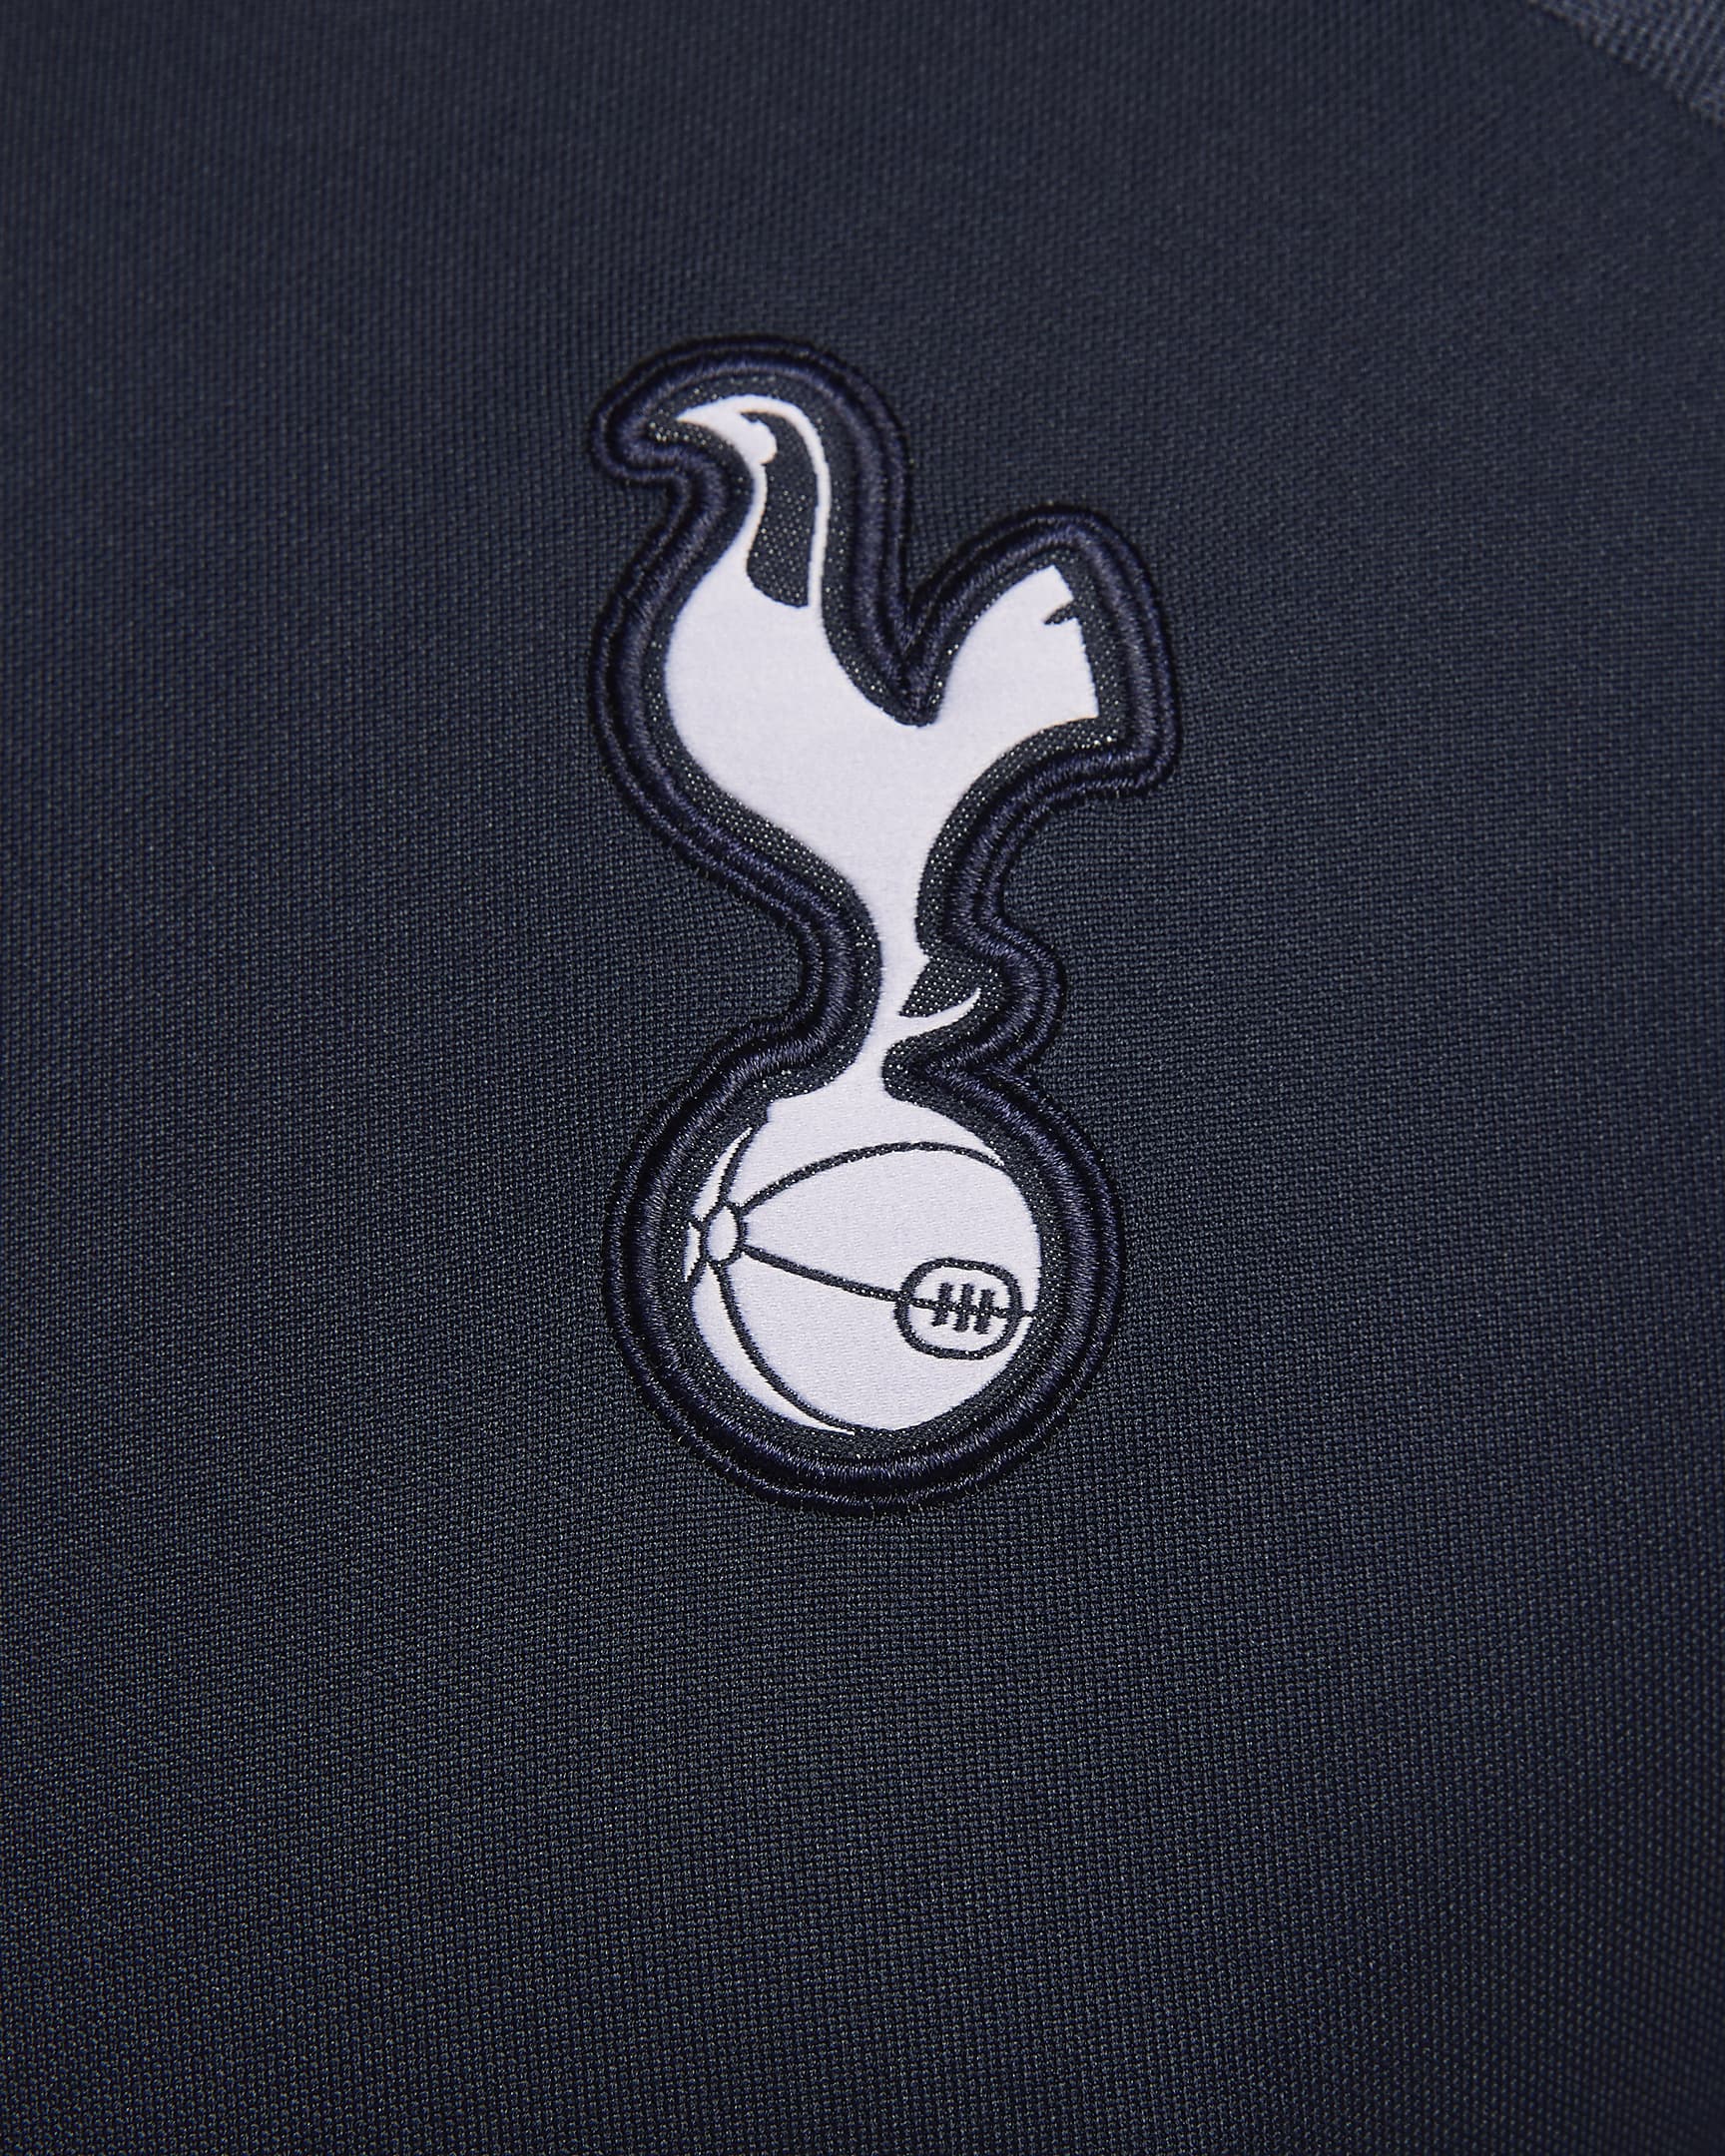 Tottenham Hotspur Strike Men's Nike Dri-FIT Knit Football Top. Nike CA